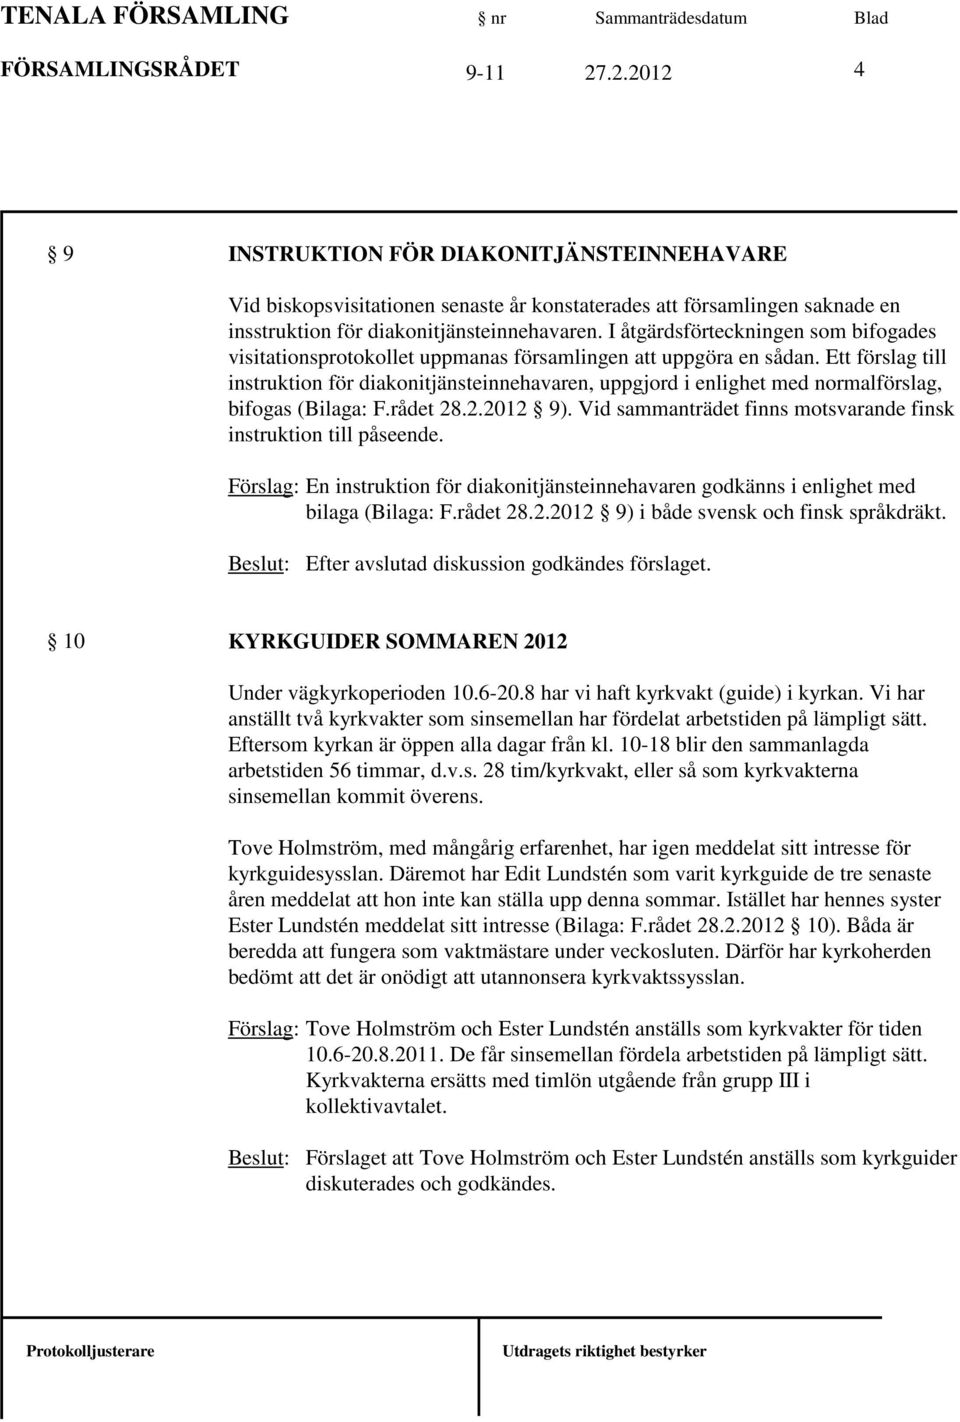 Ett förslag till instruktion för diakonitjänsteinnehavaren, uppgjord i enlighet med normalförslag, bifogas (Bilaga: F.rådet 28.2.2012 9).